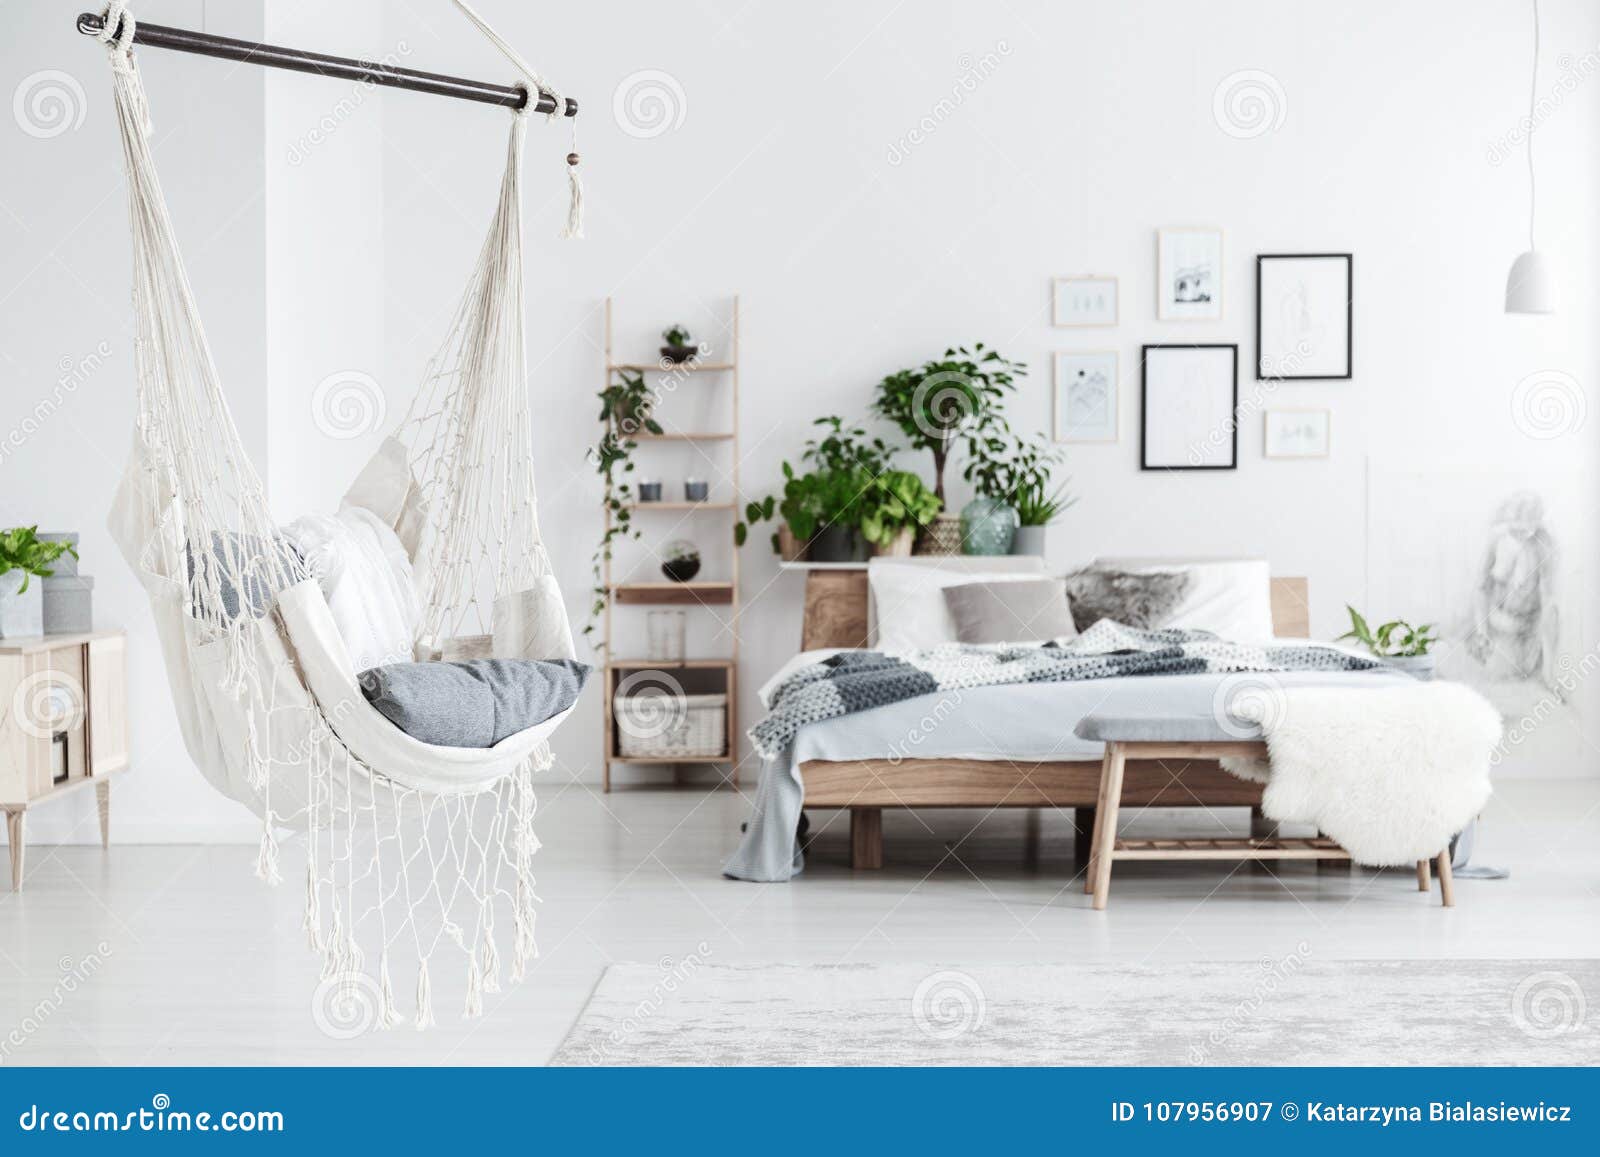 White Hammock In Bedroom Interior Stock Image Image Of